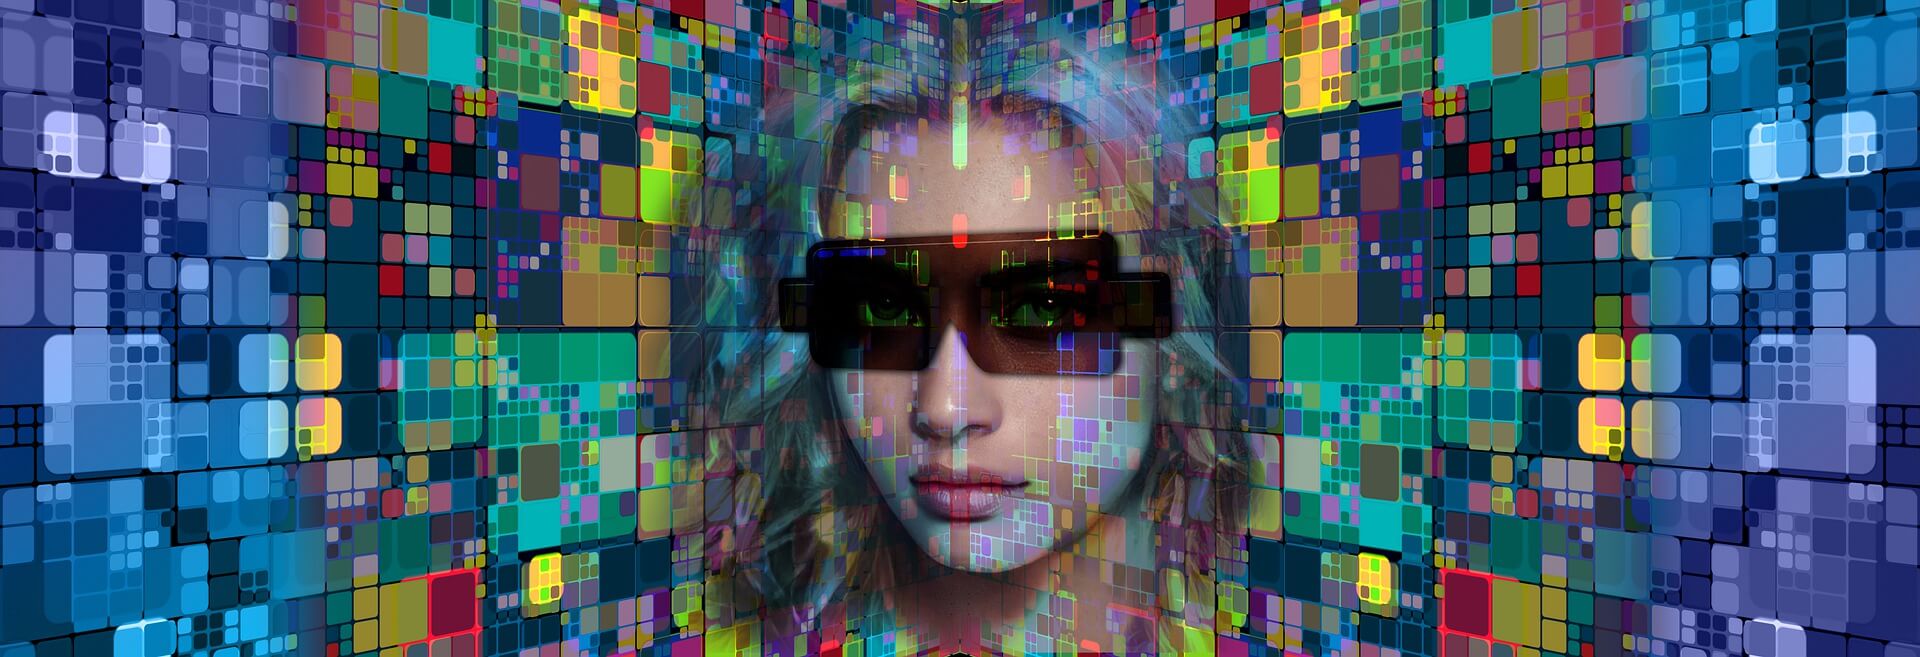 图片展示了一位佩戴太阳镜的女性面部，背景由多彩的方块组成，给人一种未来感和数字化的视觉效果。